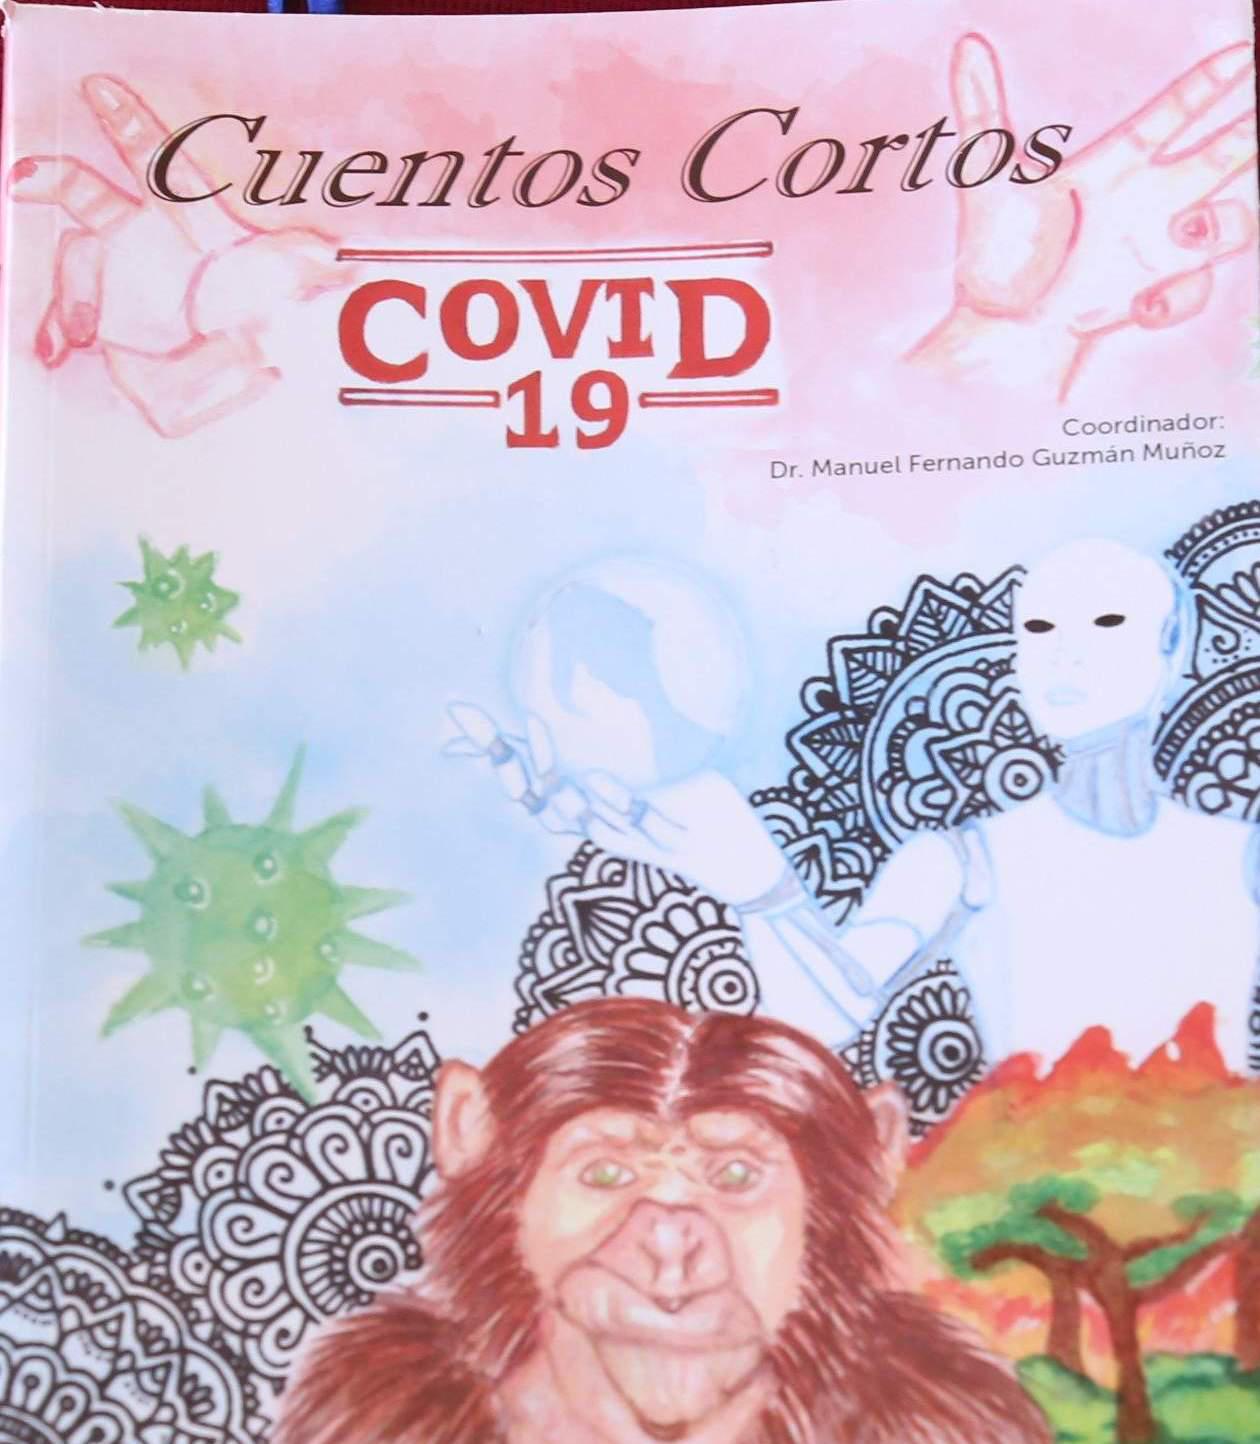 $!Un total de cuatro cuentos de alumnos del ICO están publicados en el libro “Cuentos Cortos Covid 19”.